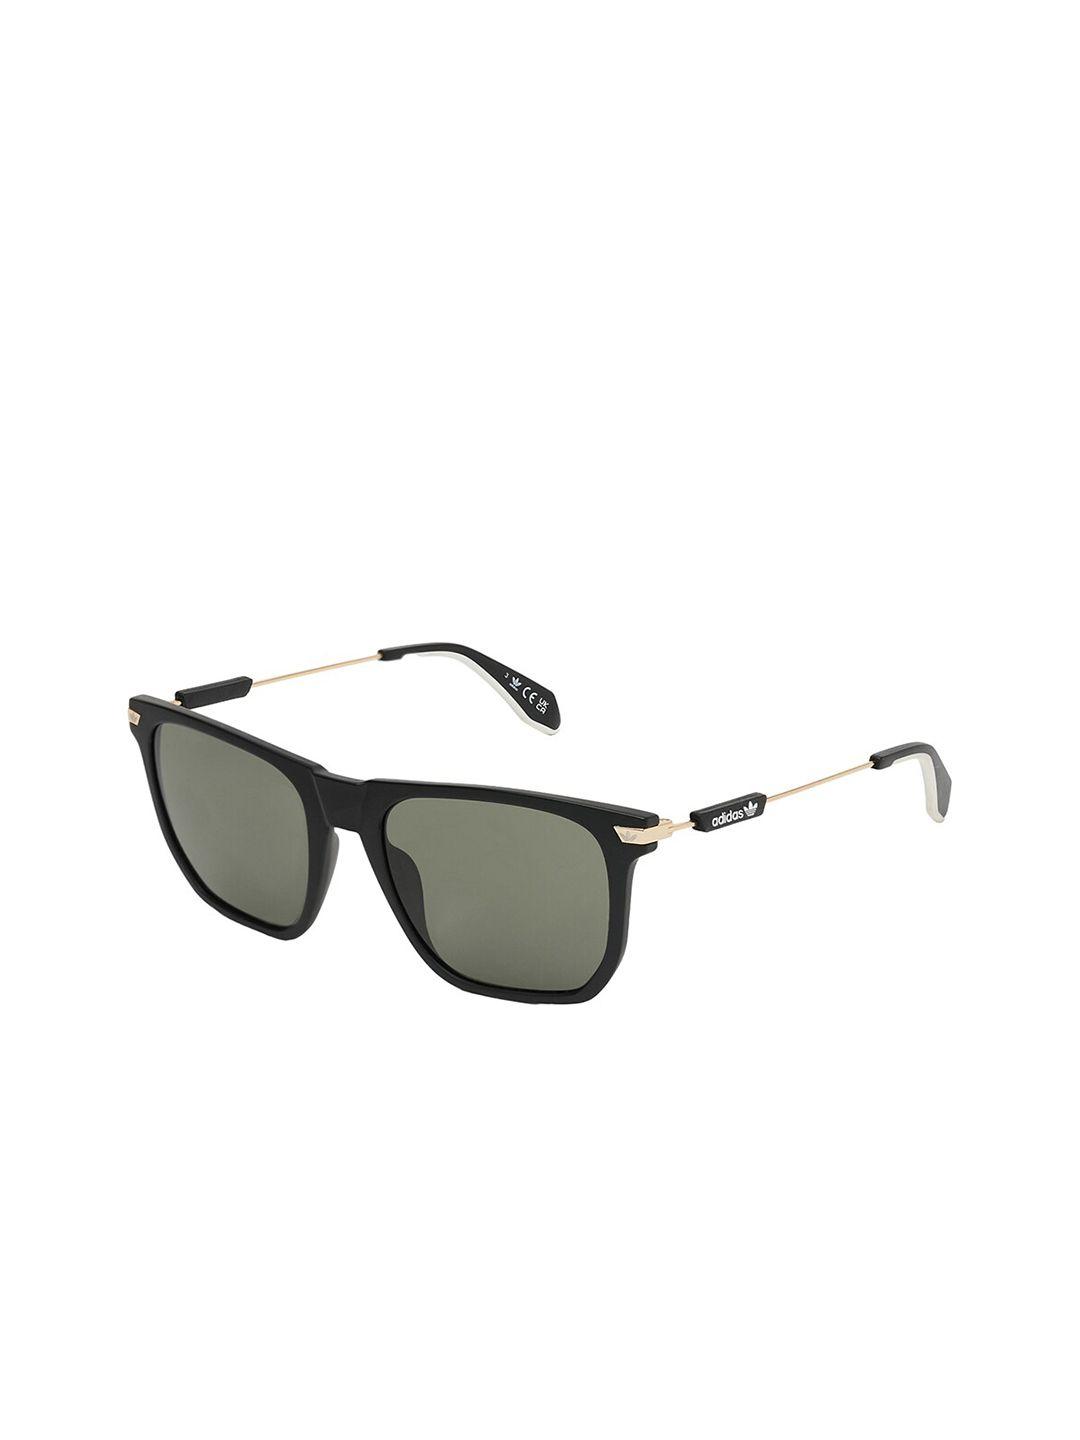 adidas-men-full-rim-square-sunglasses